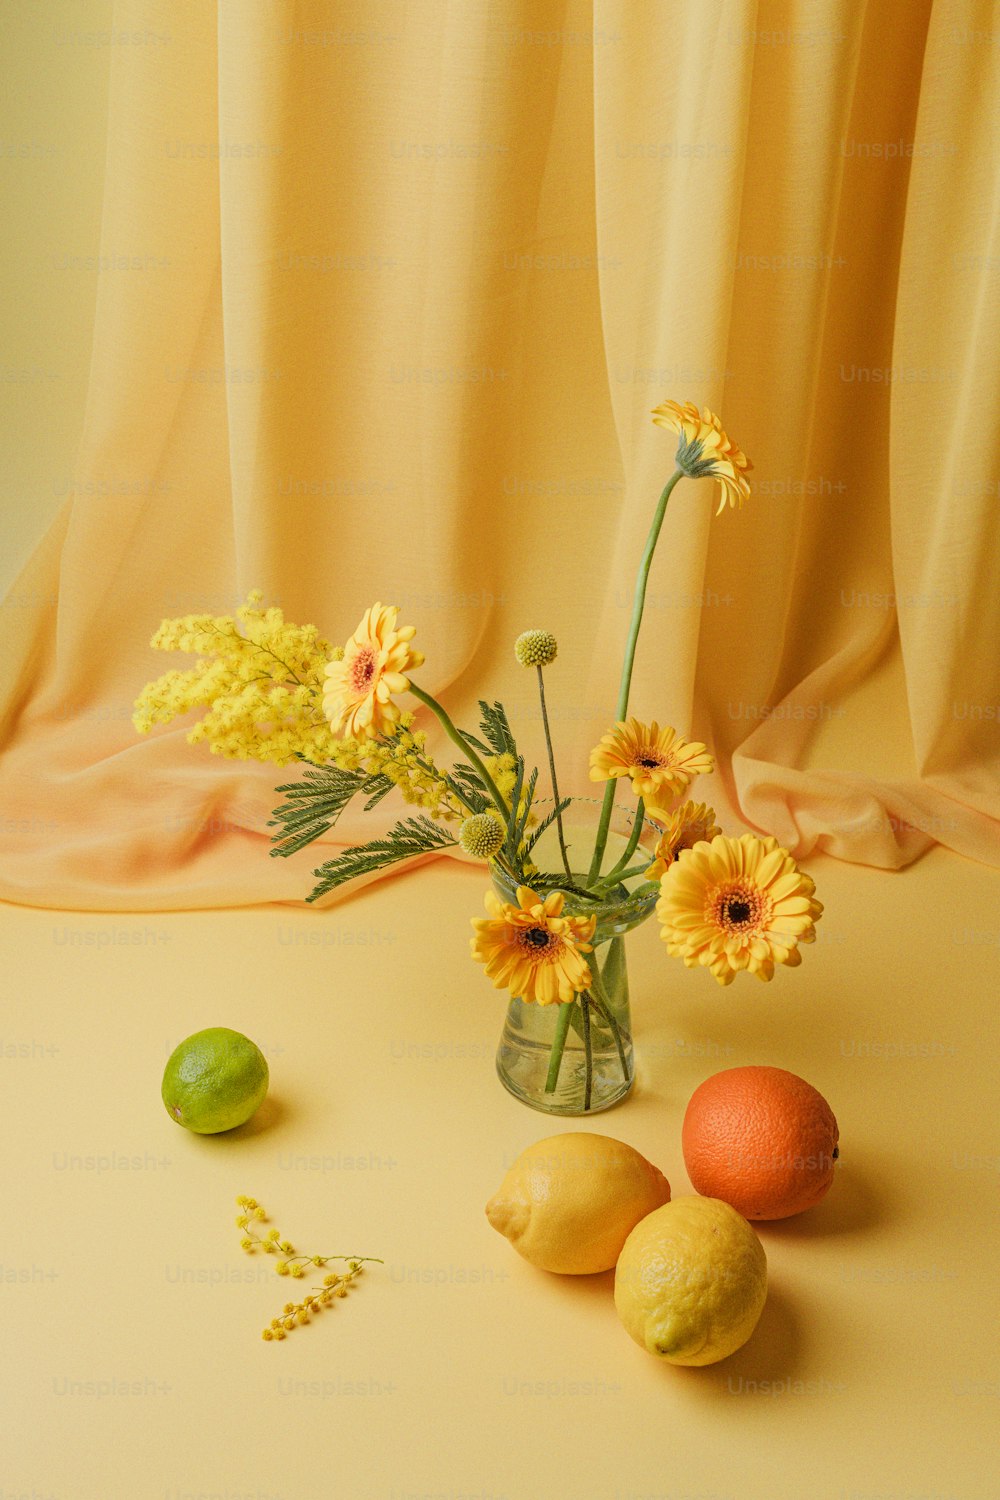 レモンの隣に黄色い花でいっぱいの花瓶